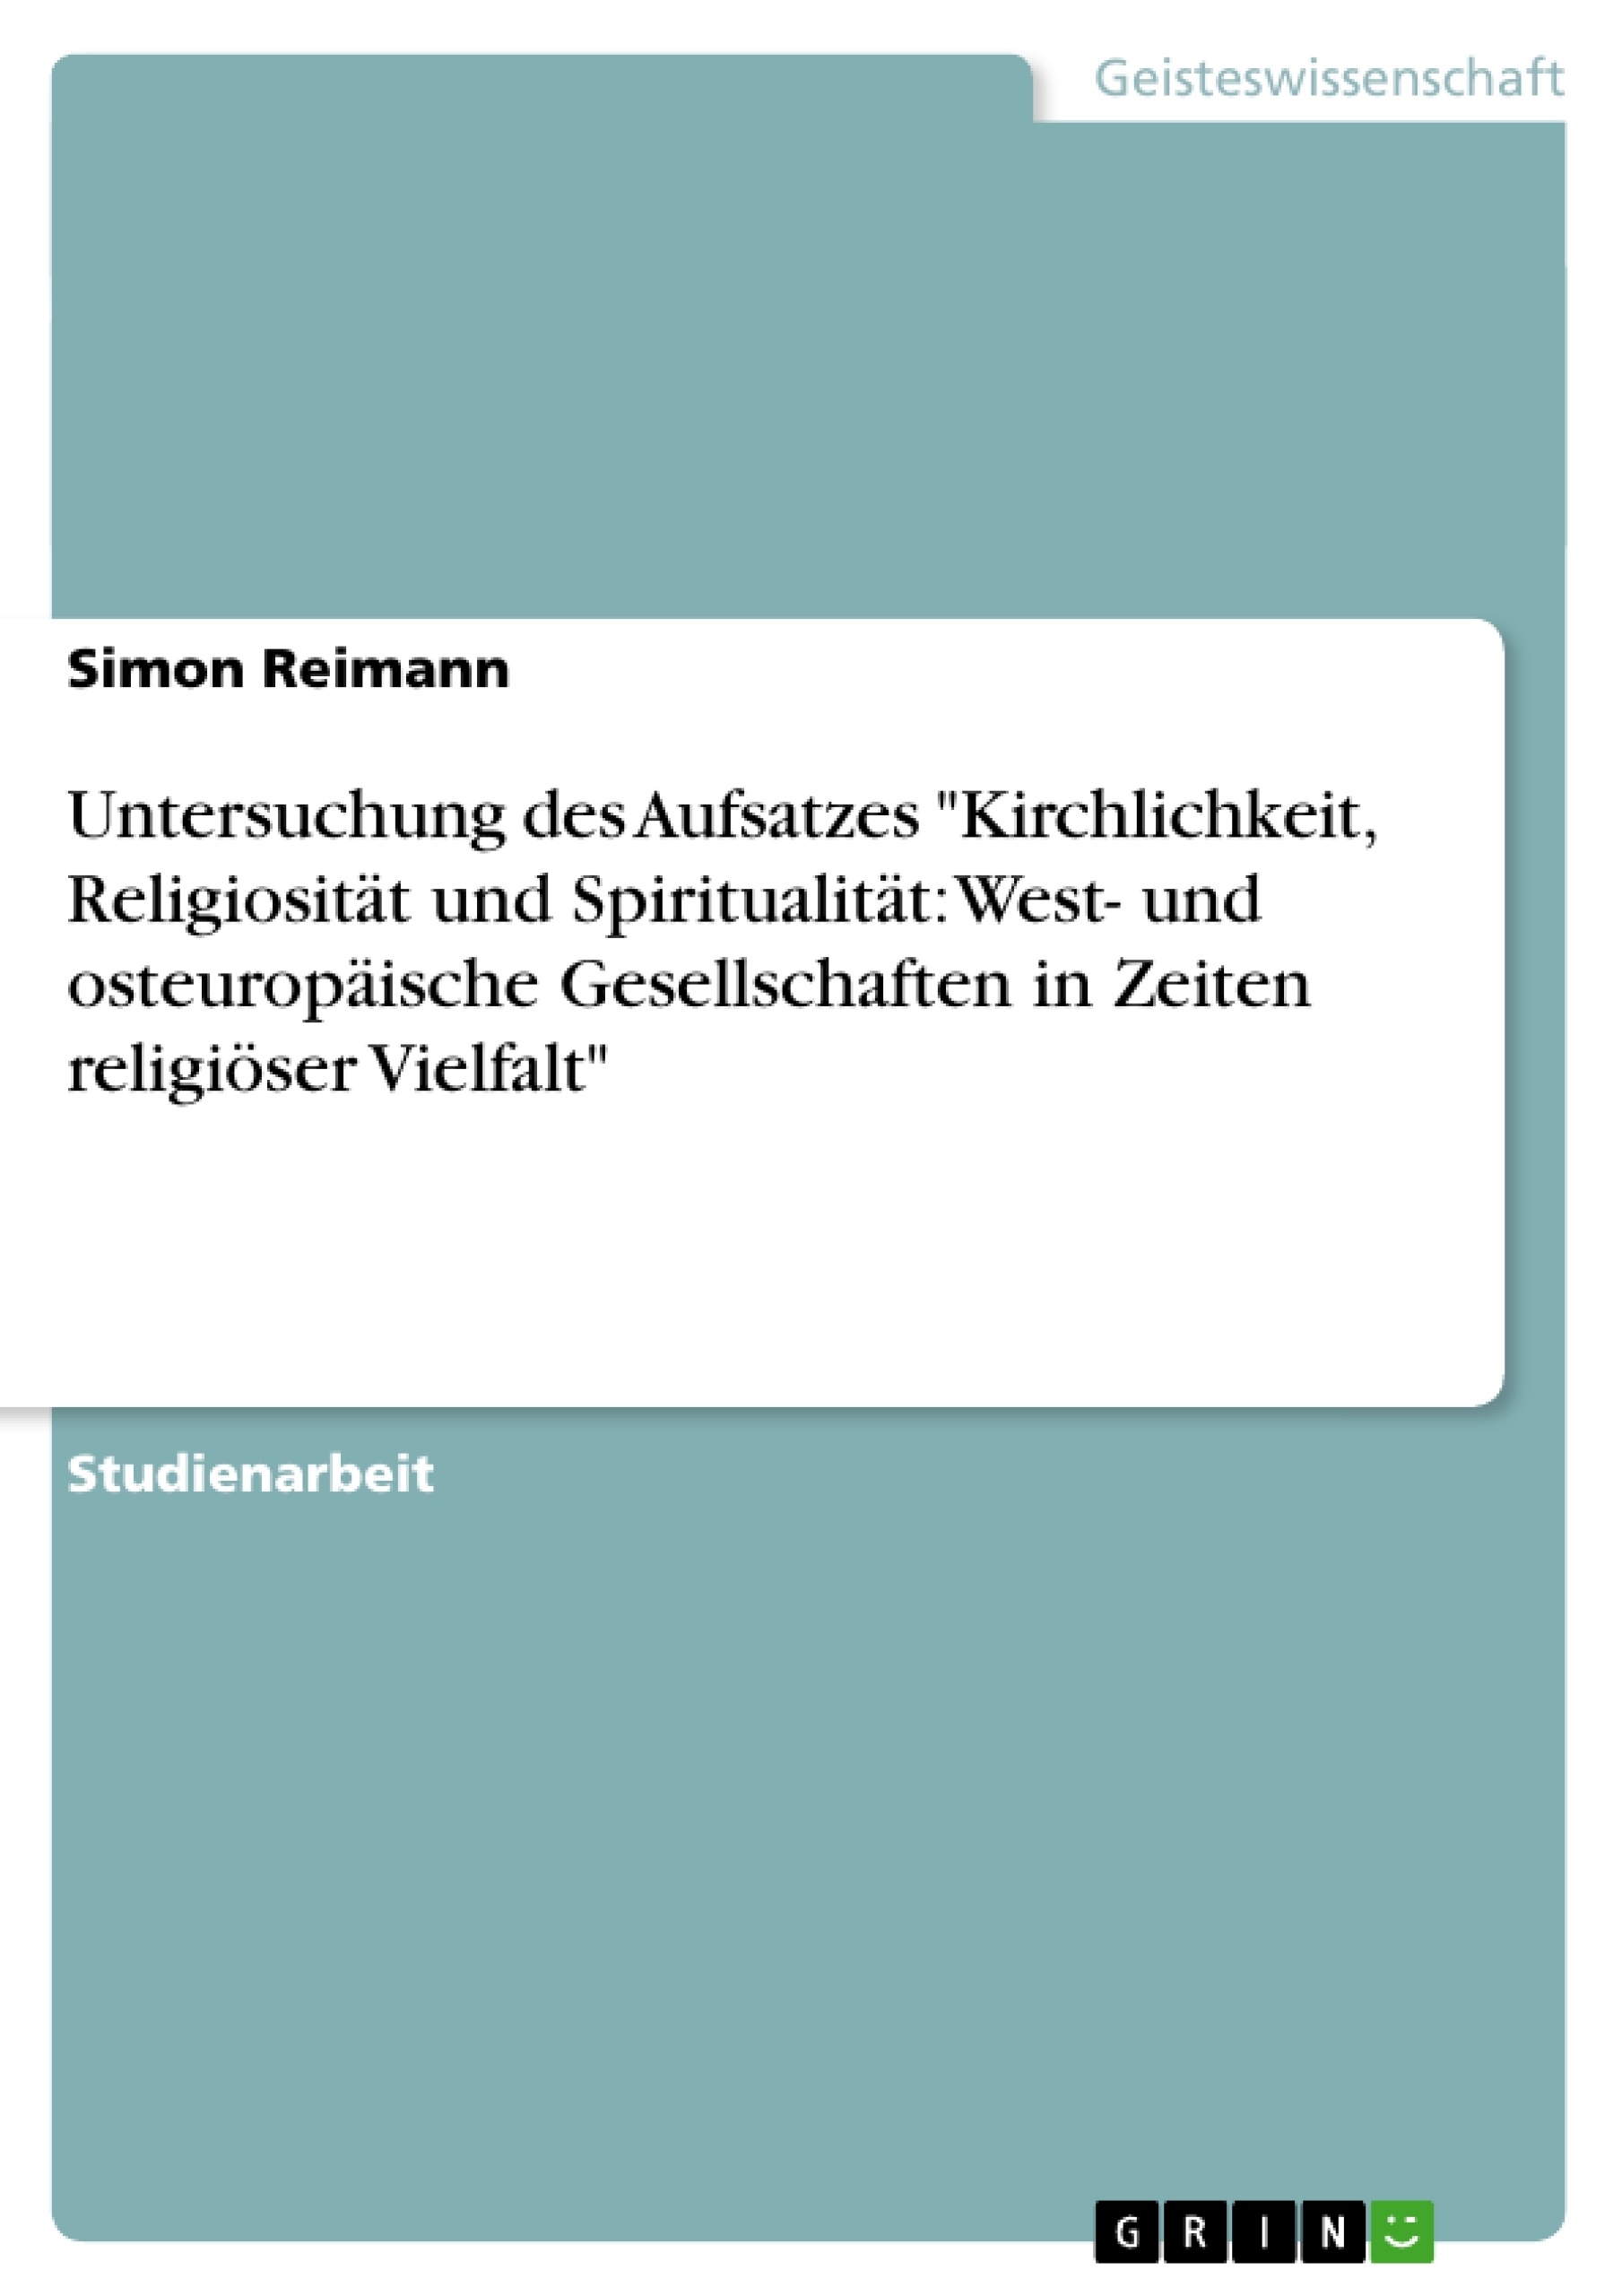 Titel: Untersuchung des Aufsatzes "Kirchlichkeit, Religiosität und Spiritualität: West- und osteuropäische Gesellschaften in Zeiten religiöser Vielfalt"